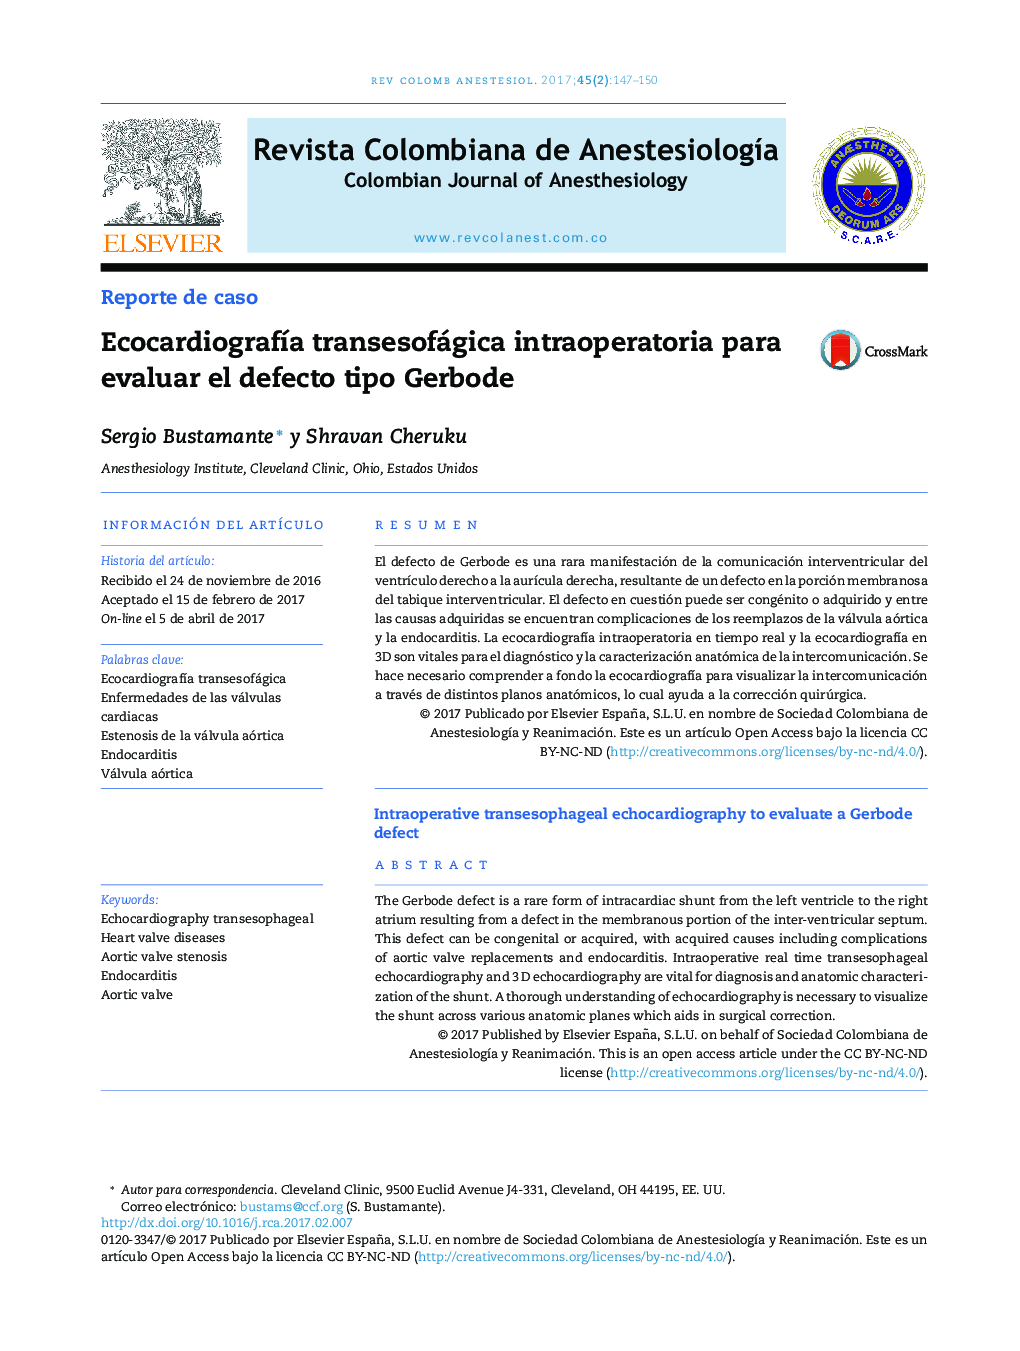 EcocardiografÃ­a transesofágica intraoperatoria para evaluar el defecto tipo Gerbode